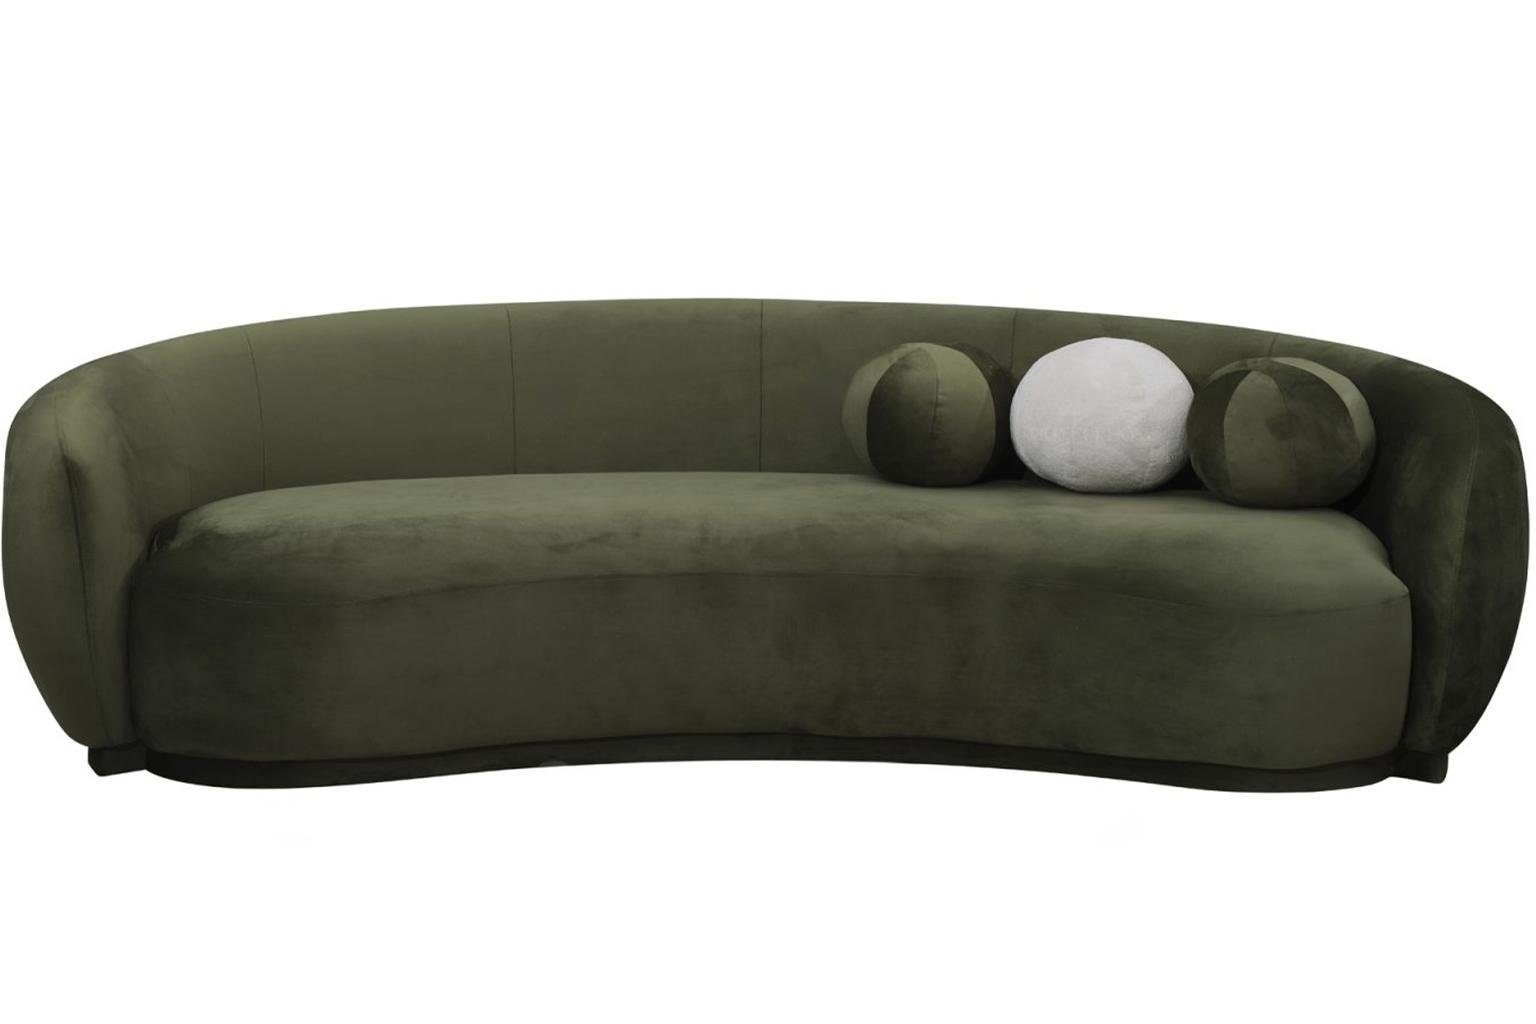 JVmoebel 3-Sitzer Luxus Dreisitzer Couch Sofa 3 Sitzer Grün Polstersofa Modern, 1 Teile, Made in Europa